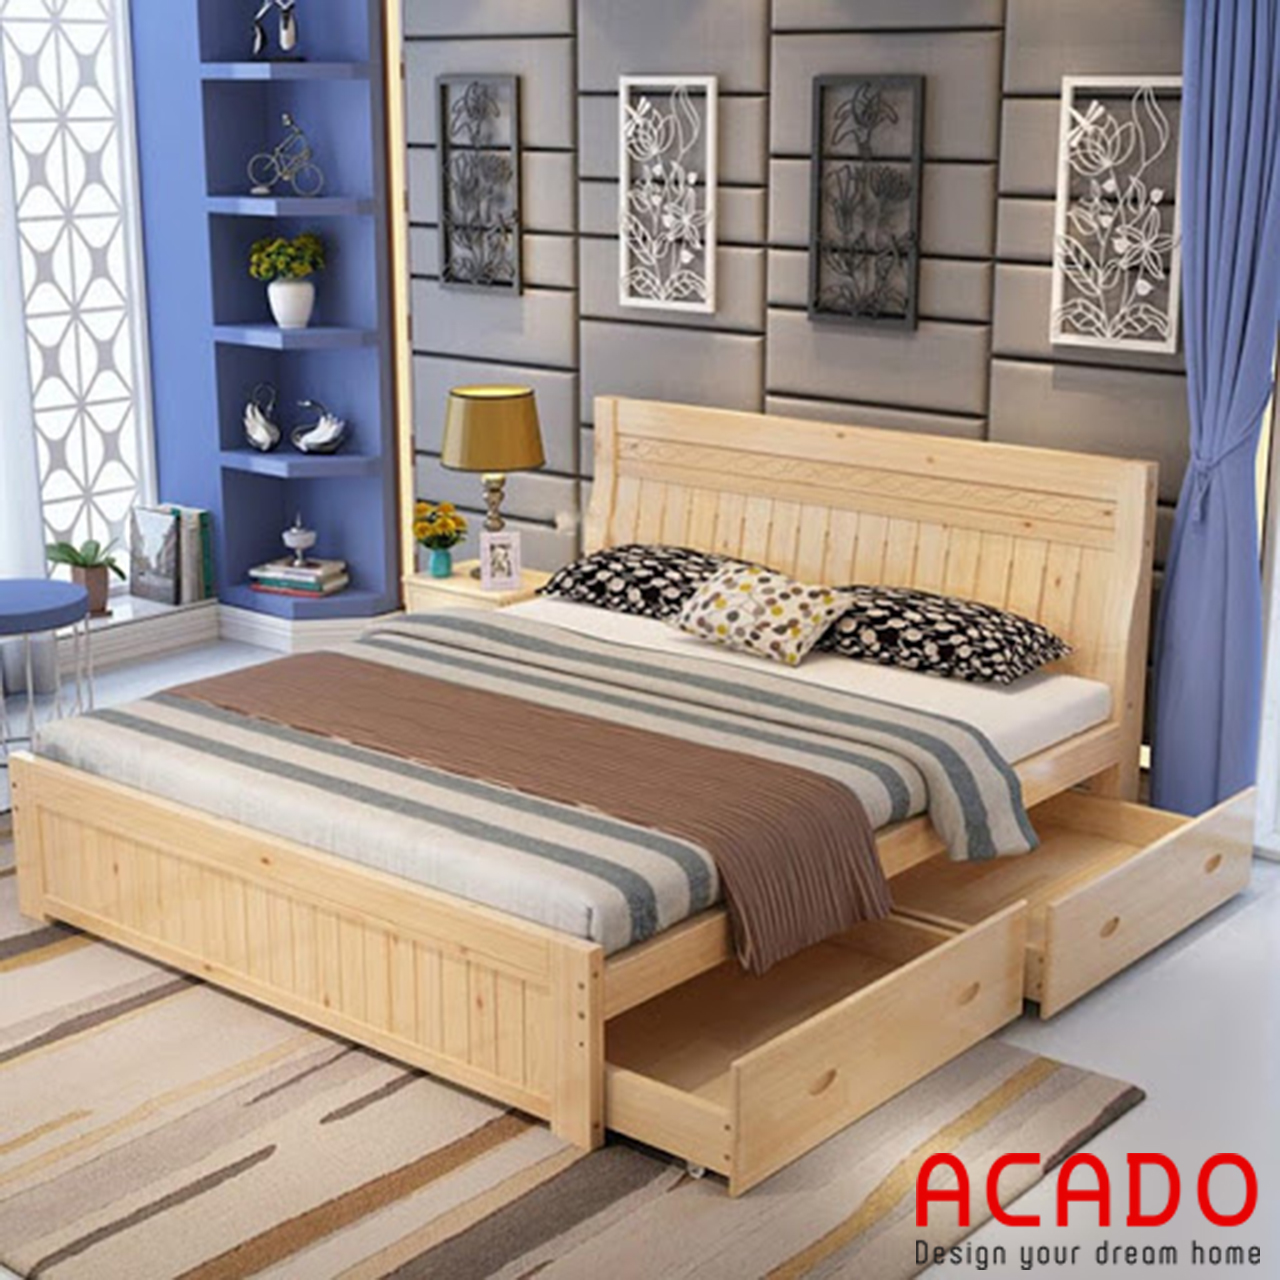 Giường ngủ gỗ sồi nga tự nhiên màu vàng nhạt đẹp, độ bền khá cao